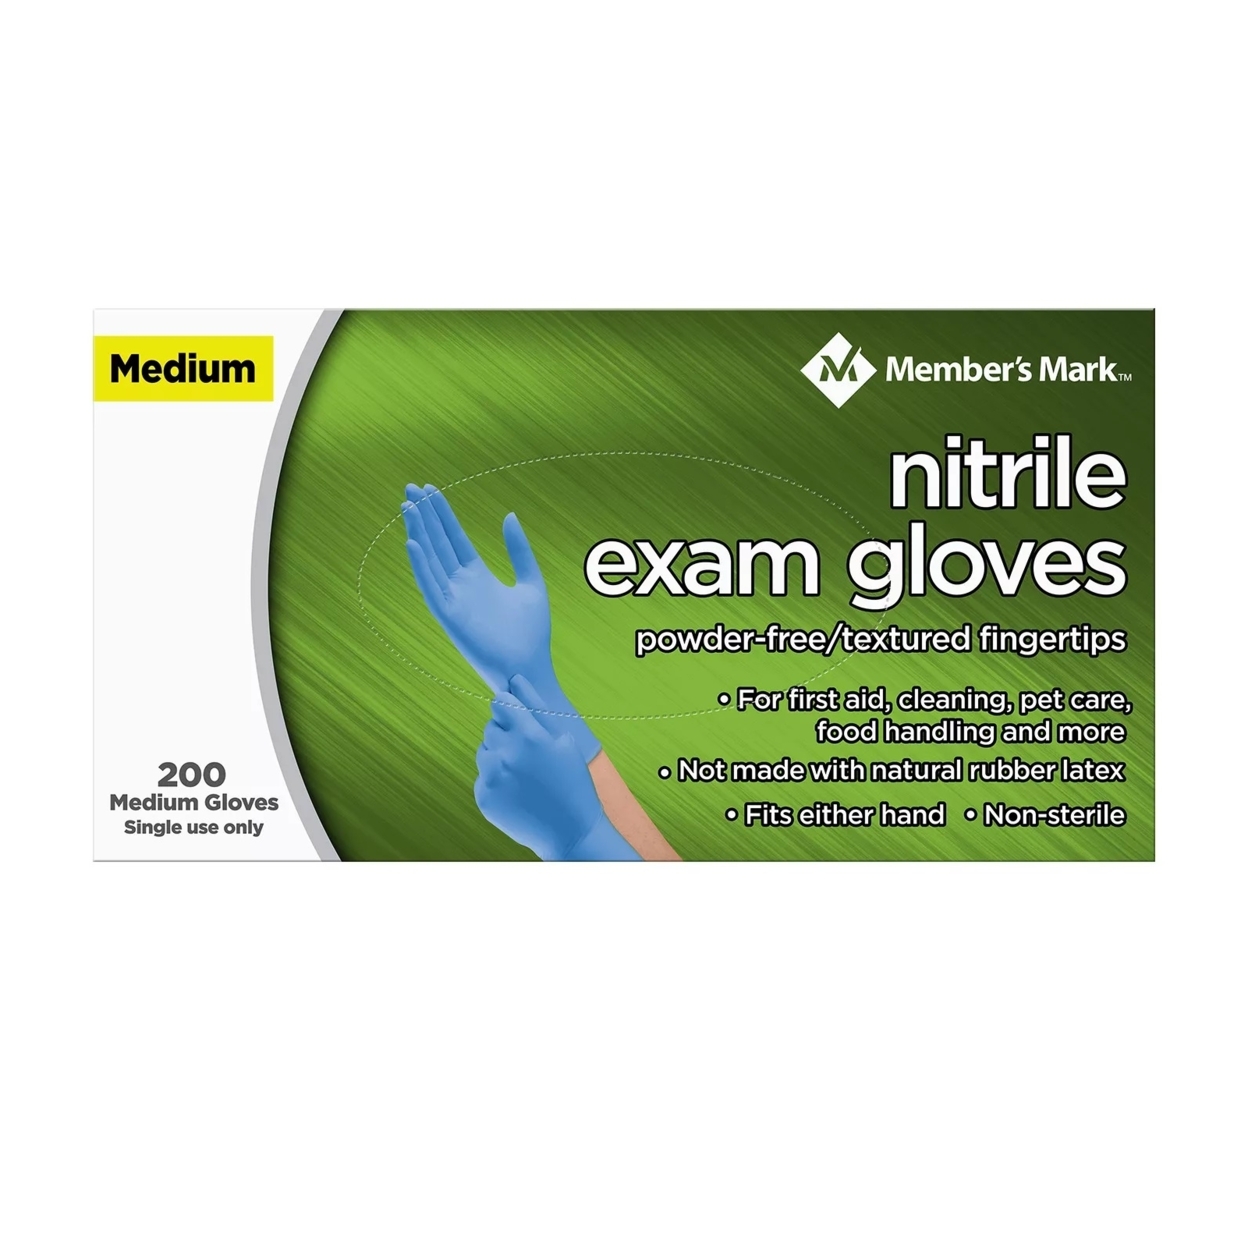 Member's Mark Nitrile Gloves, Medium (200 Count)